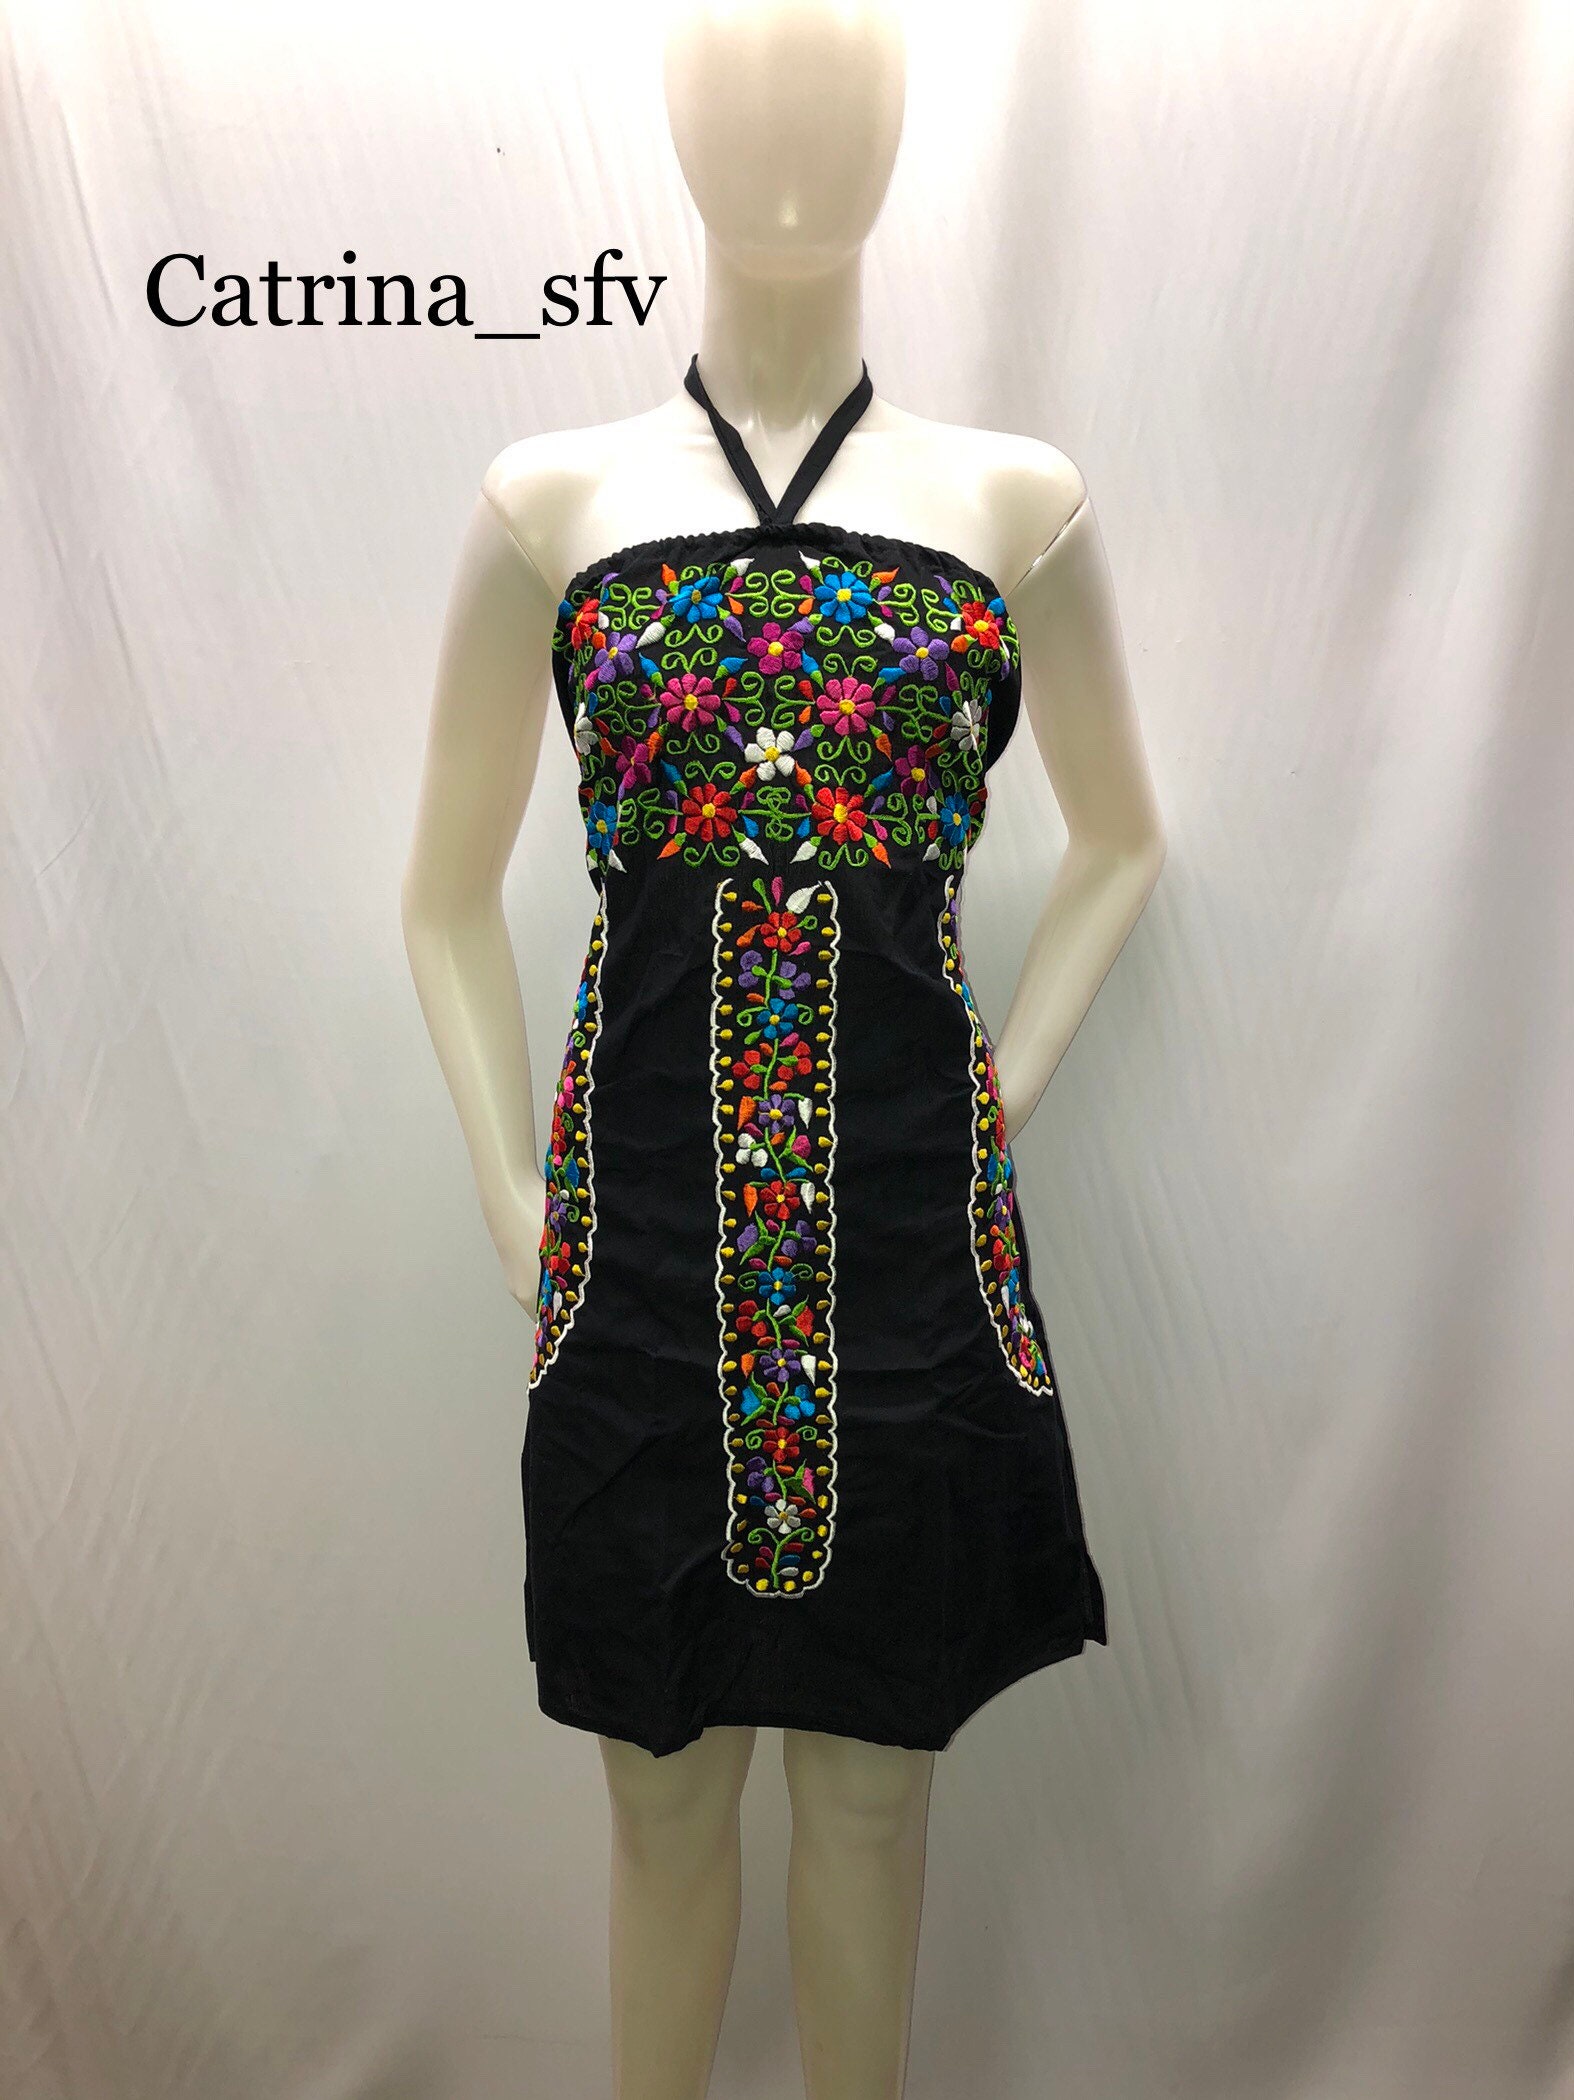 Vestido mexicano, vestido negro bordado, off the shoulders dress, vestido artesanal, vestido típico, mexicano dress, fiesta mexicana GRATIS EN ESTADOS UNIDOS